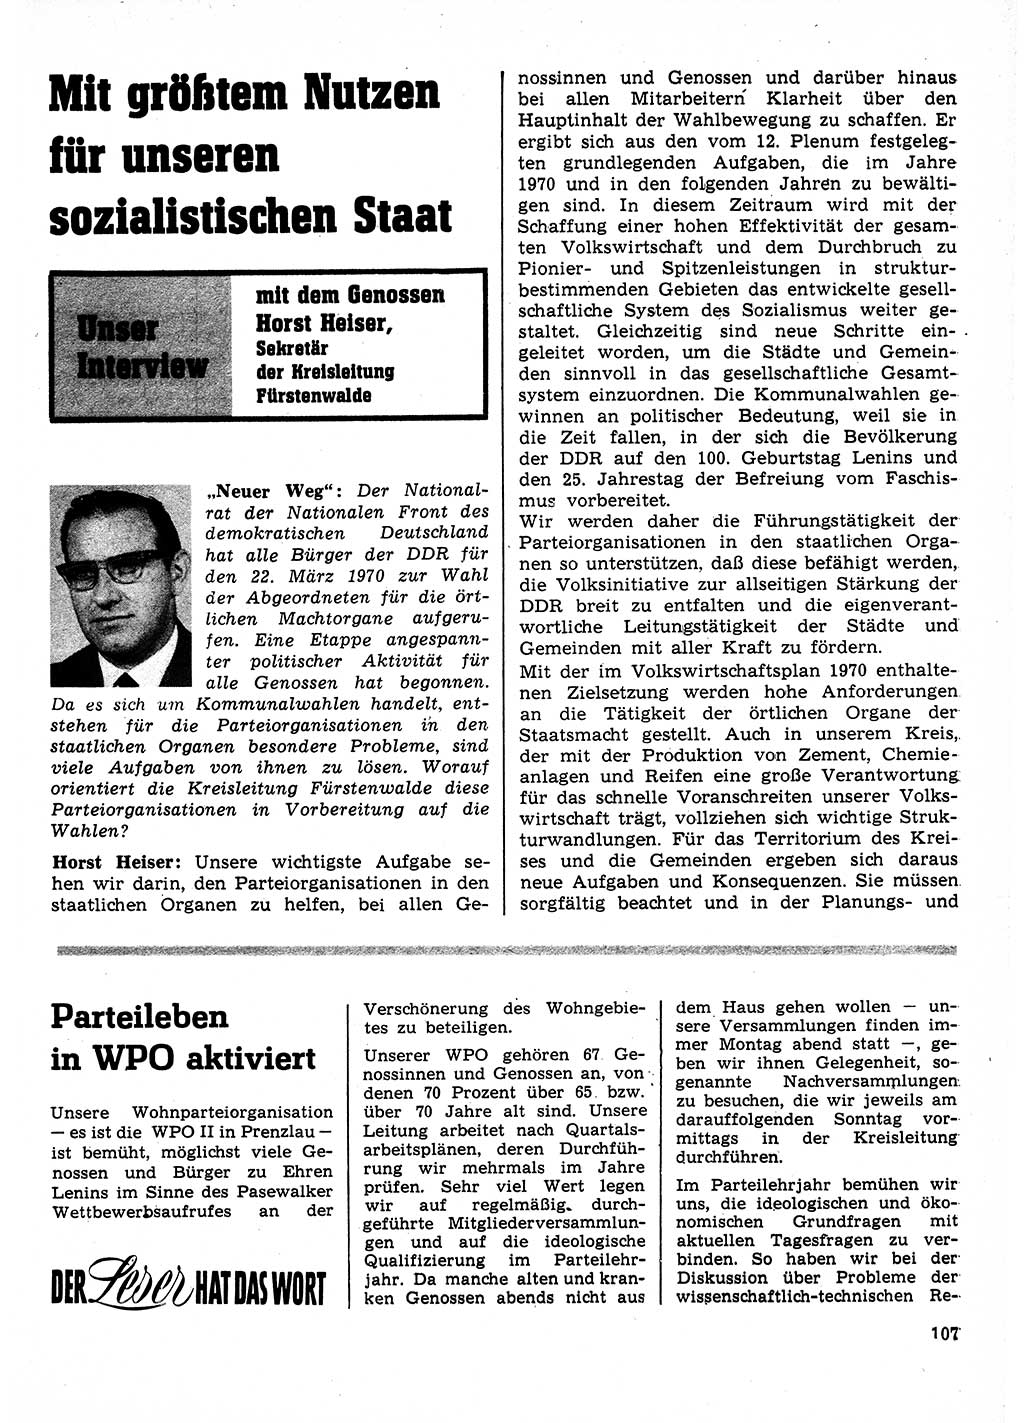 Neuer Weg (NW), Organ des Zentralkomitees (ZK) der SED (Sozialistische Einheitspartei Deutschlands) für Fragen des Parteilebens, 25. Jahrgang [Deutsche Demokratische Republik (DDR)] 1970, Seite 107 (NW ZK SED DDR 1970, S. 107)